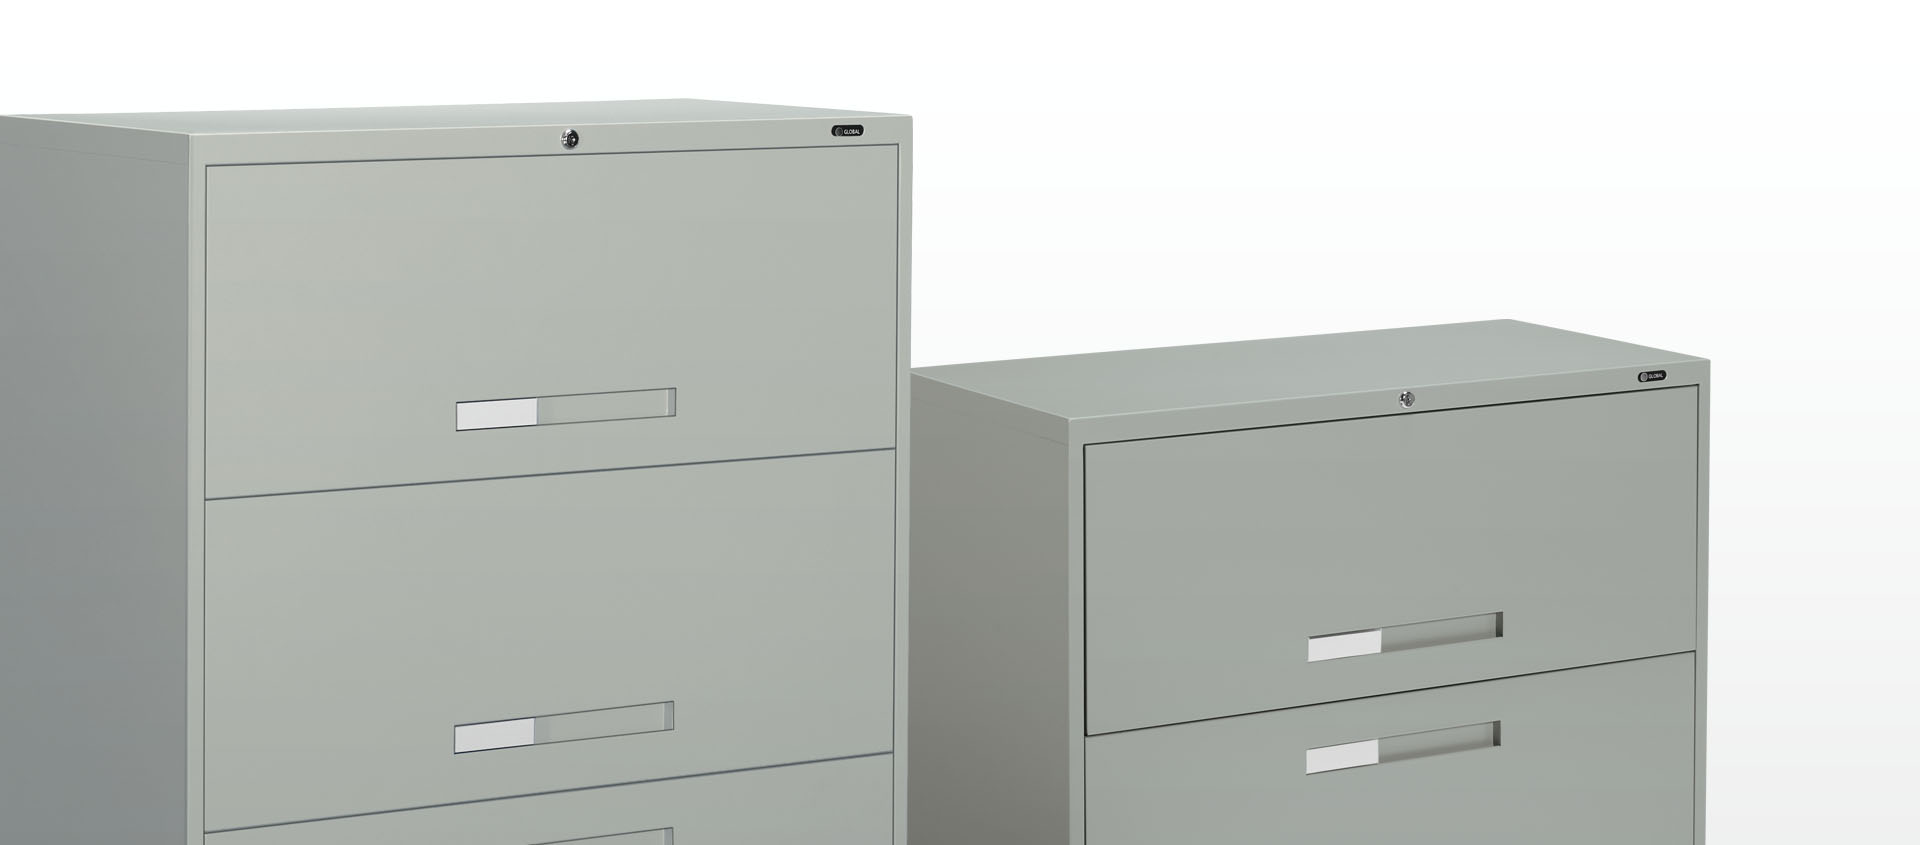 钢制文件柜|文件柜系列|办公家具|中国有限公司官家具|Meridian 9100 文件柜系列